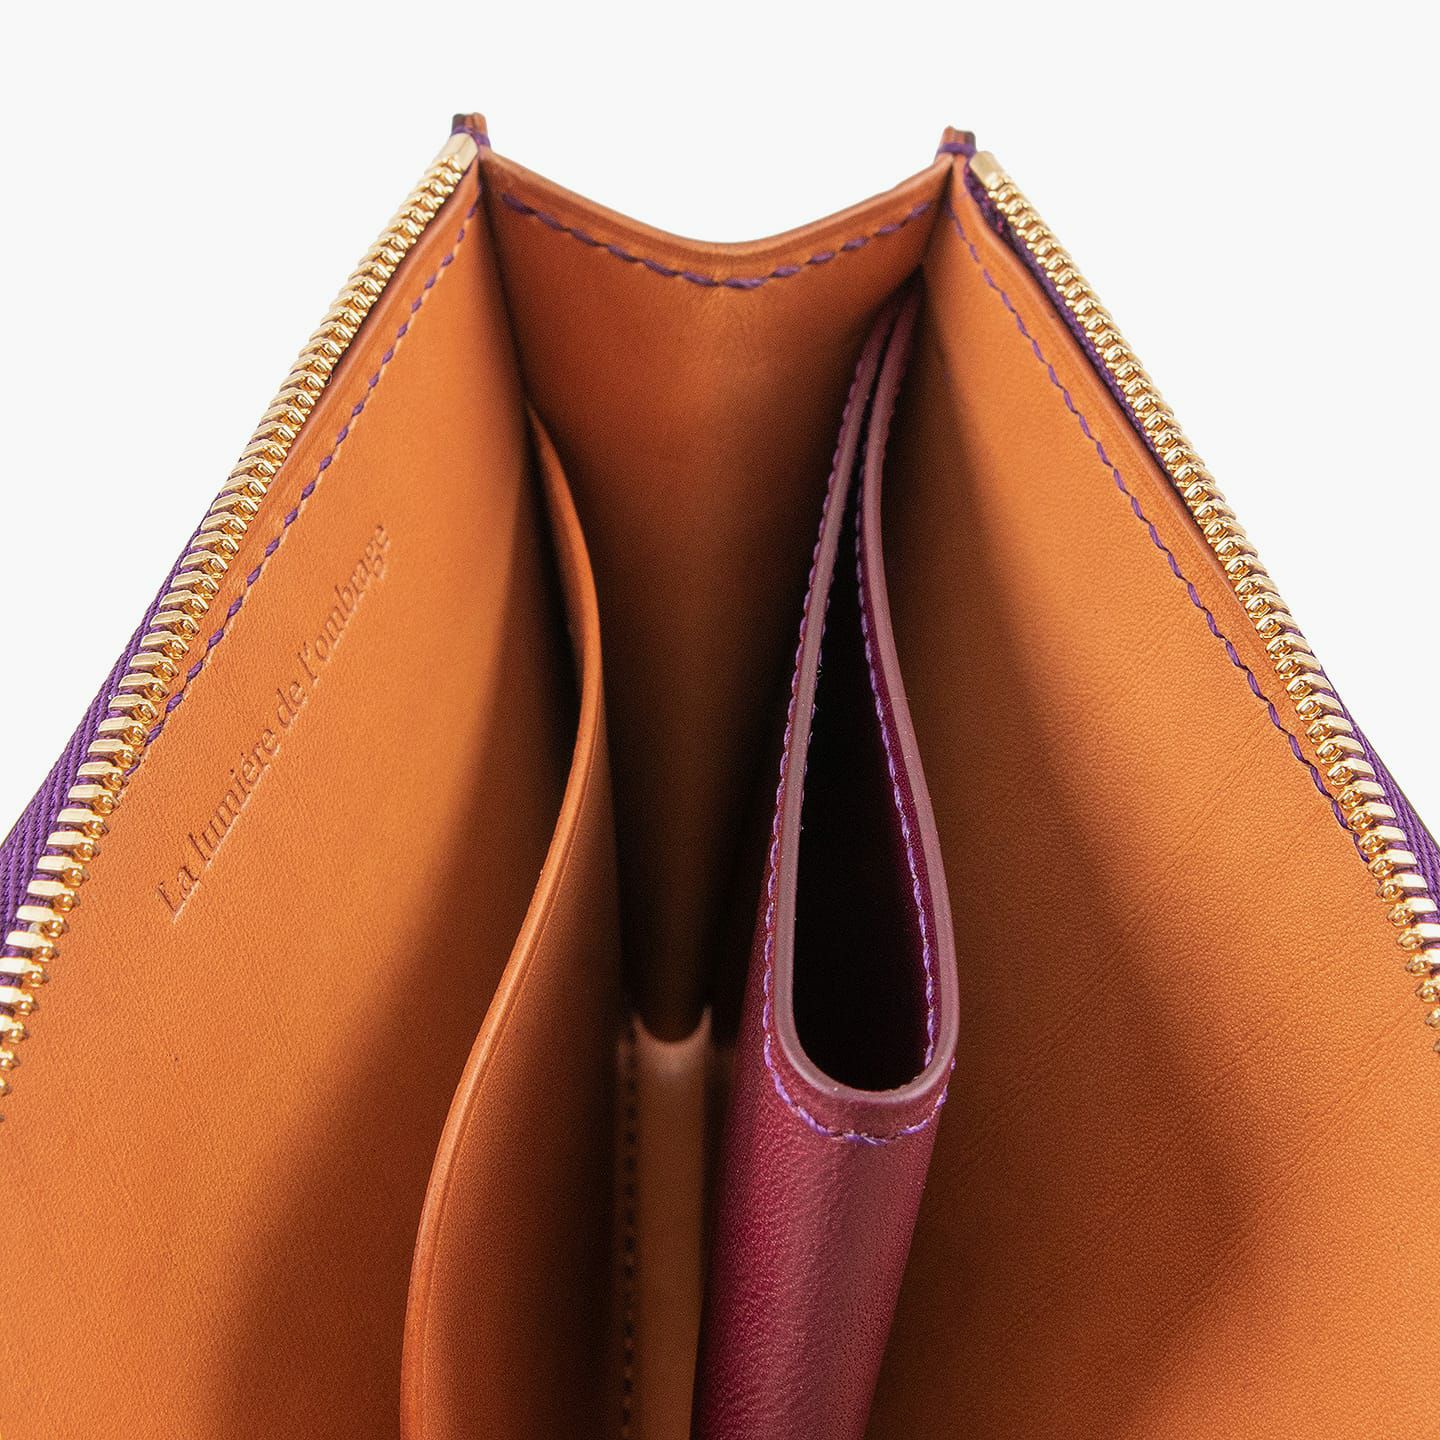 外装＆内装コインポケット（イングラサット）：Purple、内装（イングラサット）：Tan、糸色：外装＆内装コインポケットと同系色、ファスナー：Gold